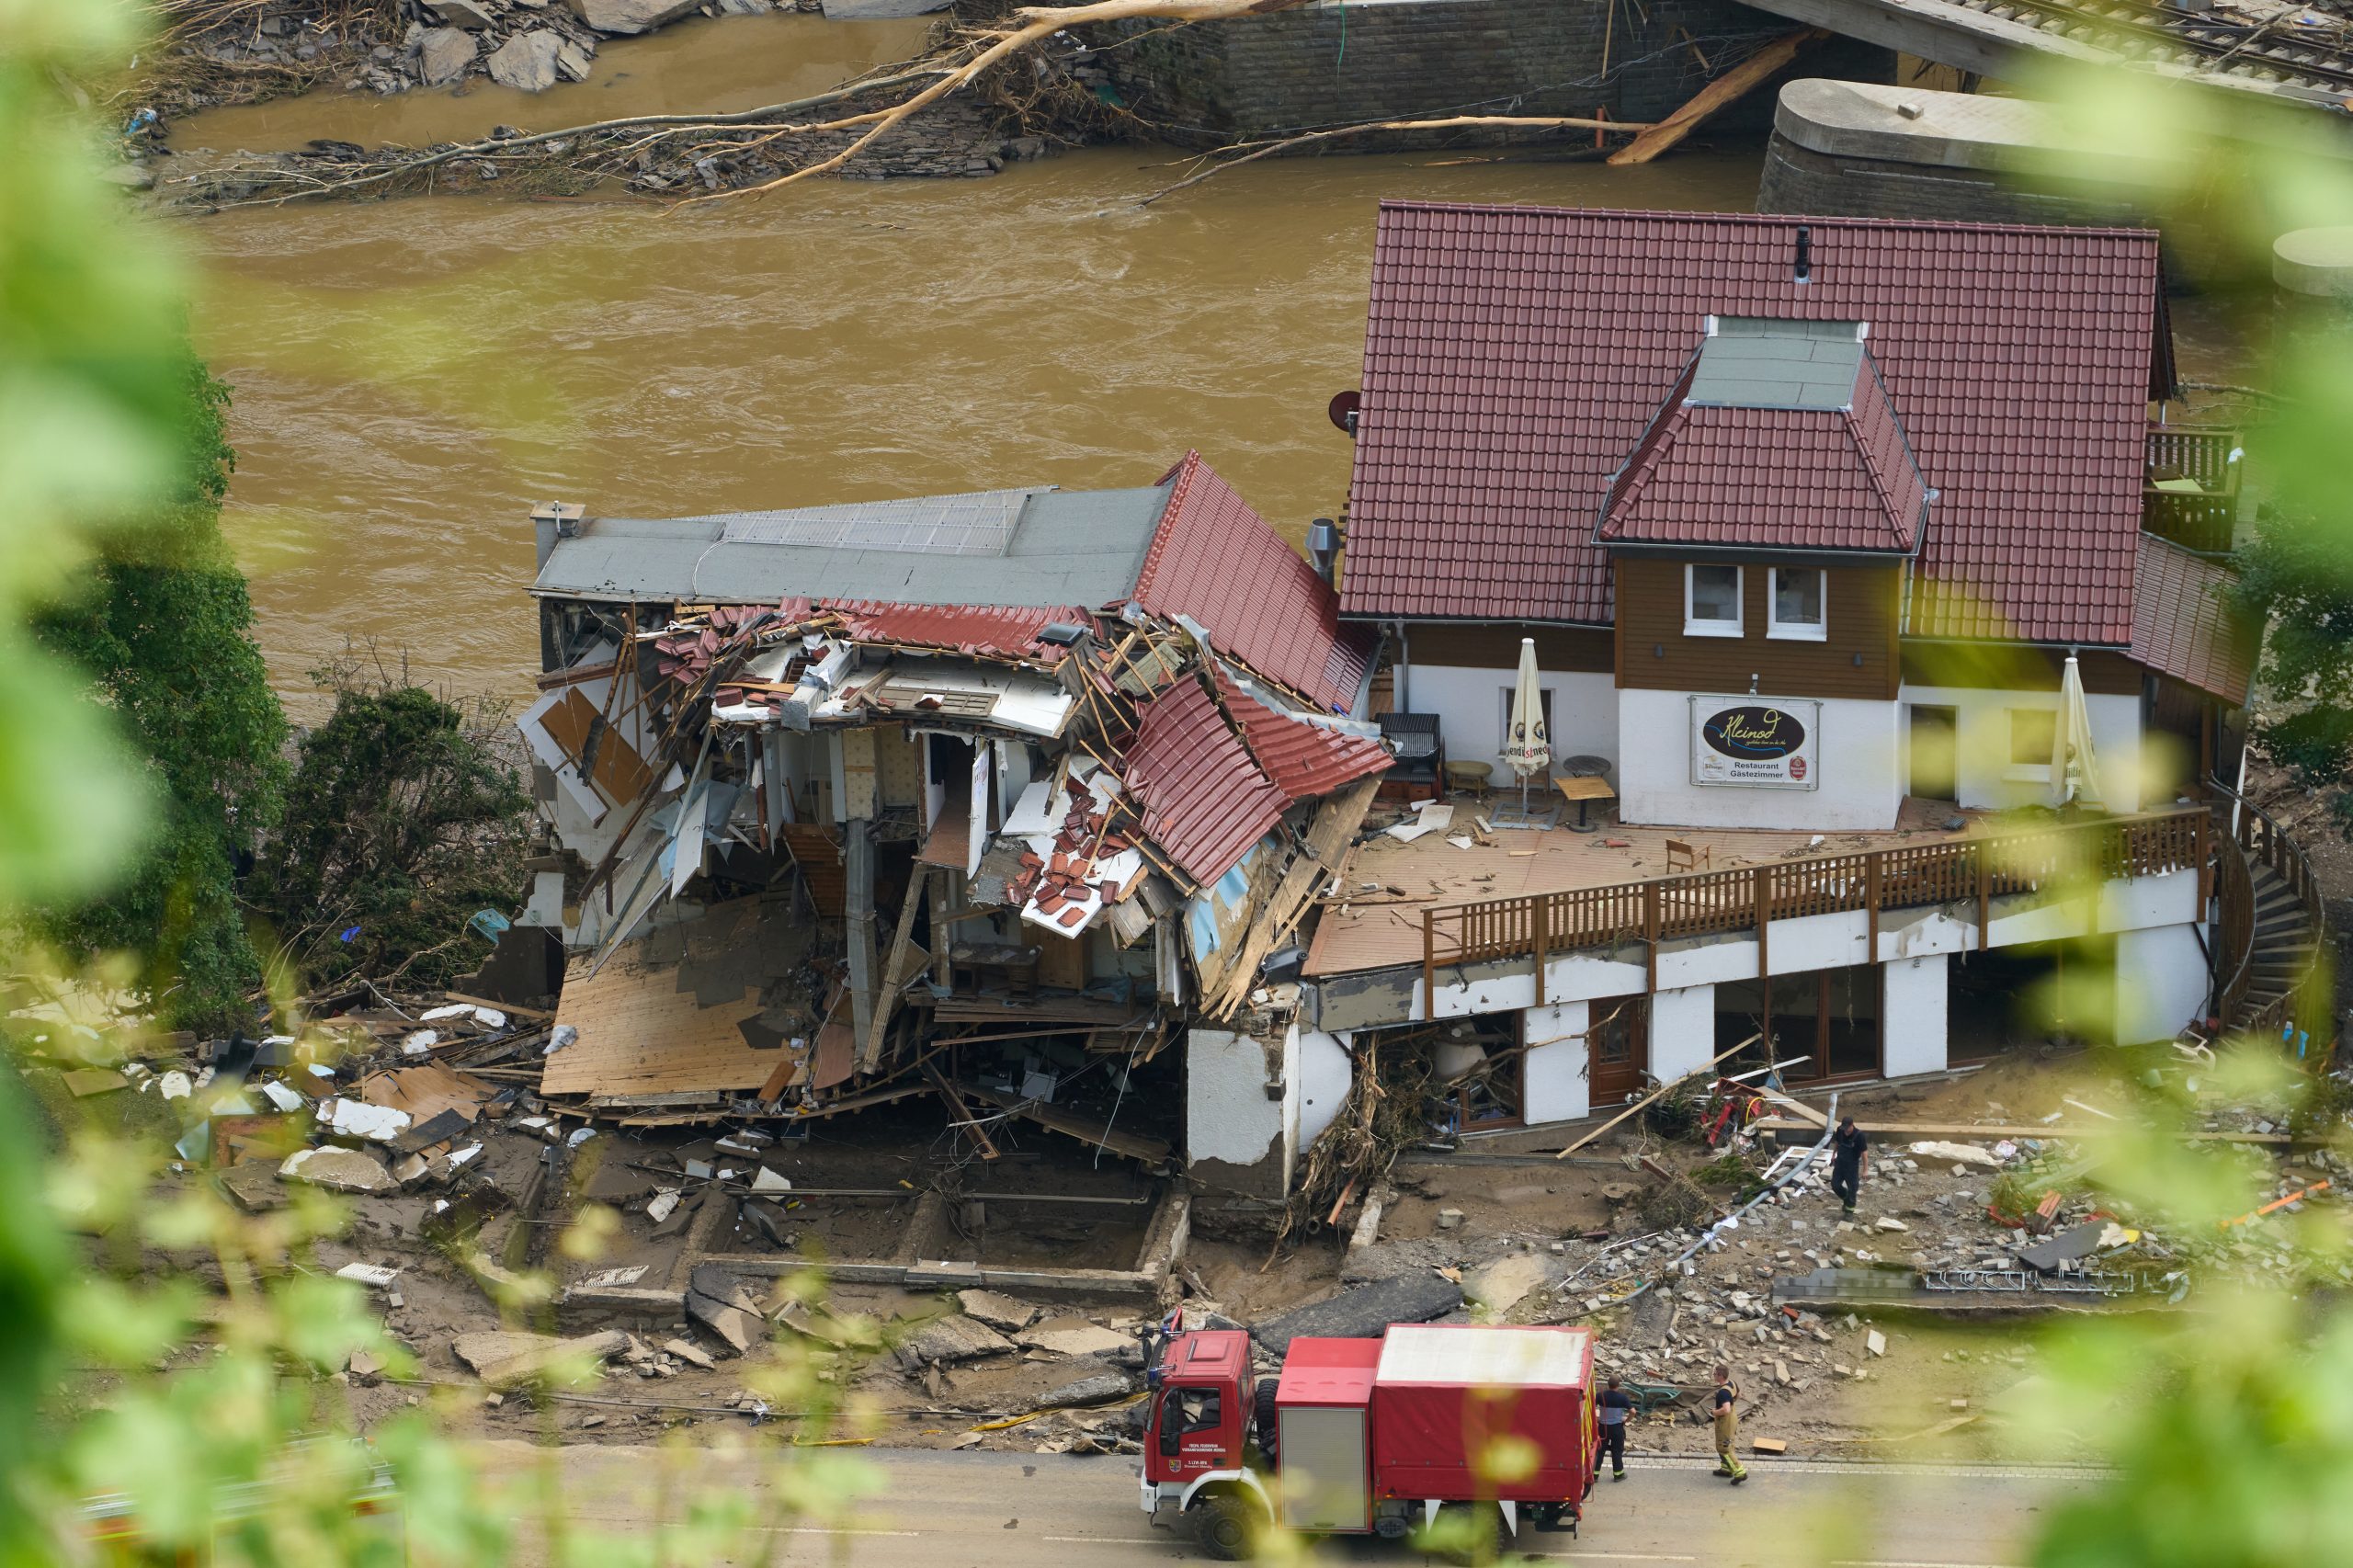 Häuser im Ahrtal im Ortsteil Walporzheim sind zerstört. In den vom Unwetter betroffenen Gebieten beginnen die Aufräumungsarbeiten.